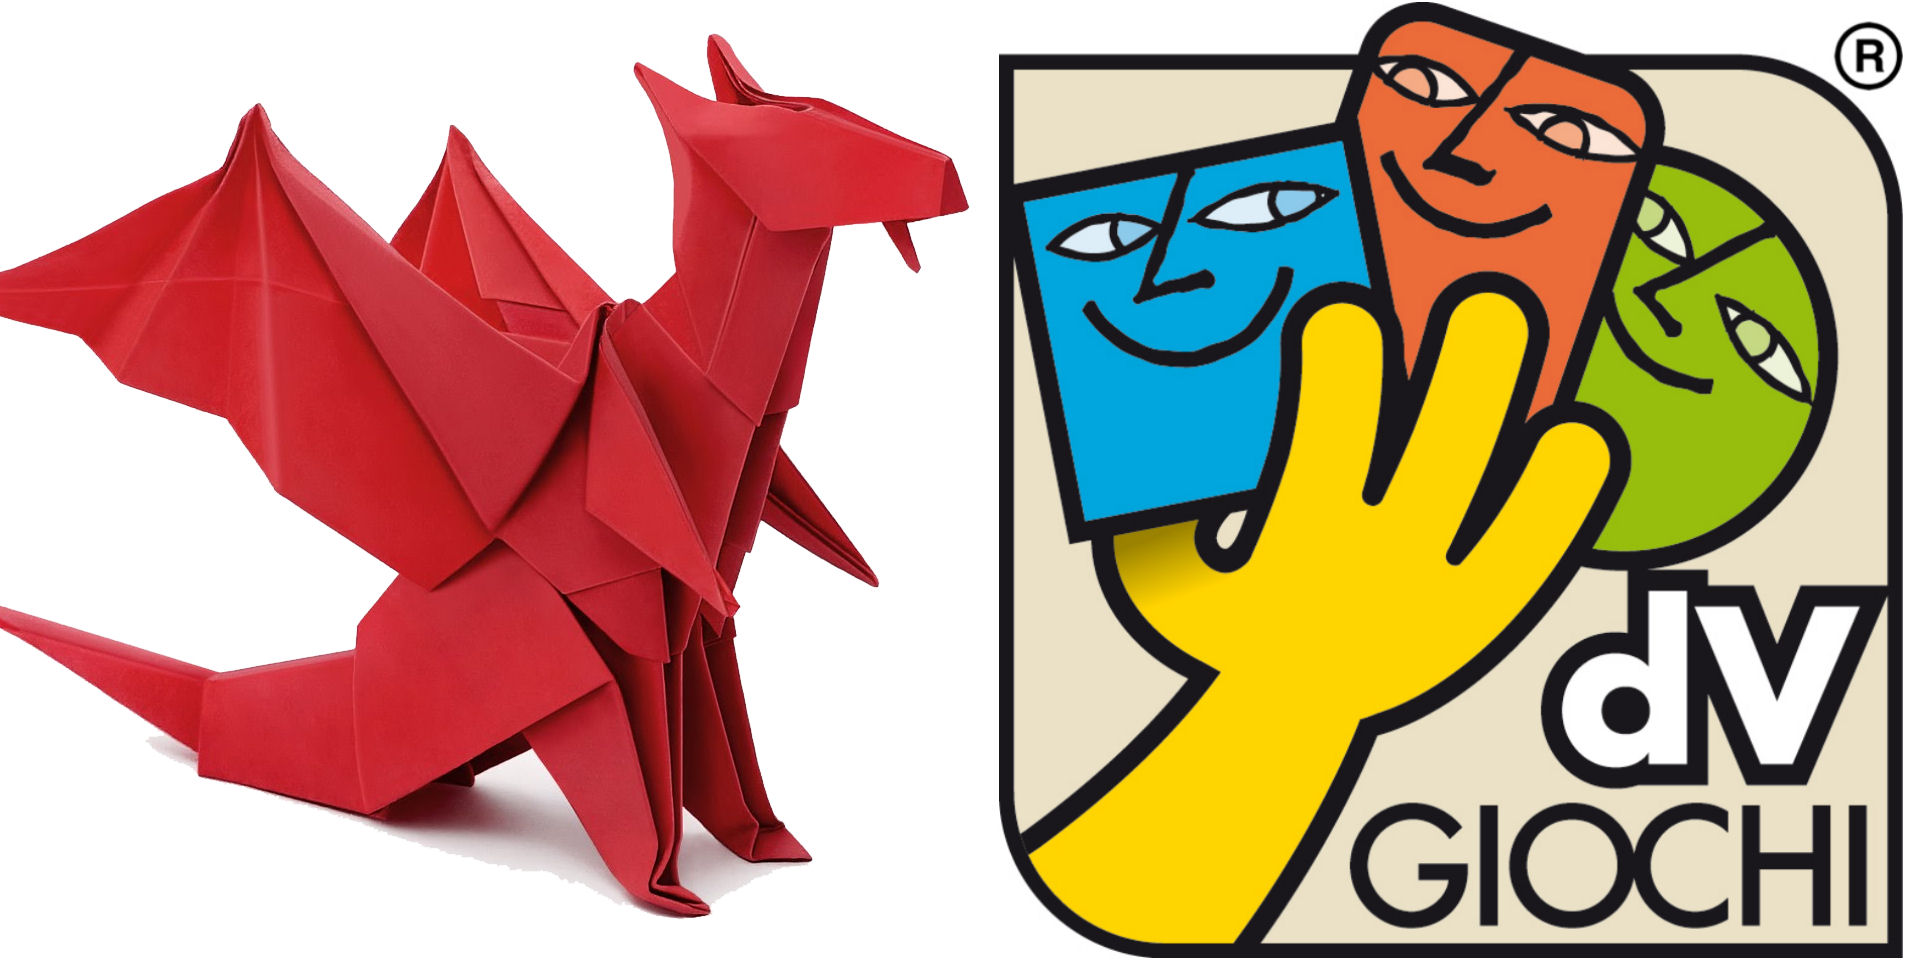 Origami by dV Giochi